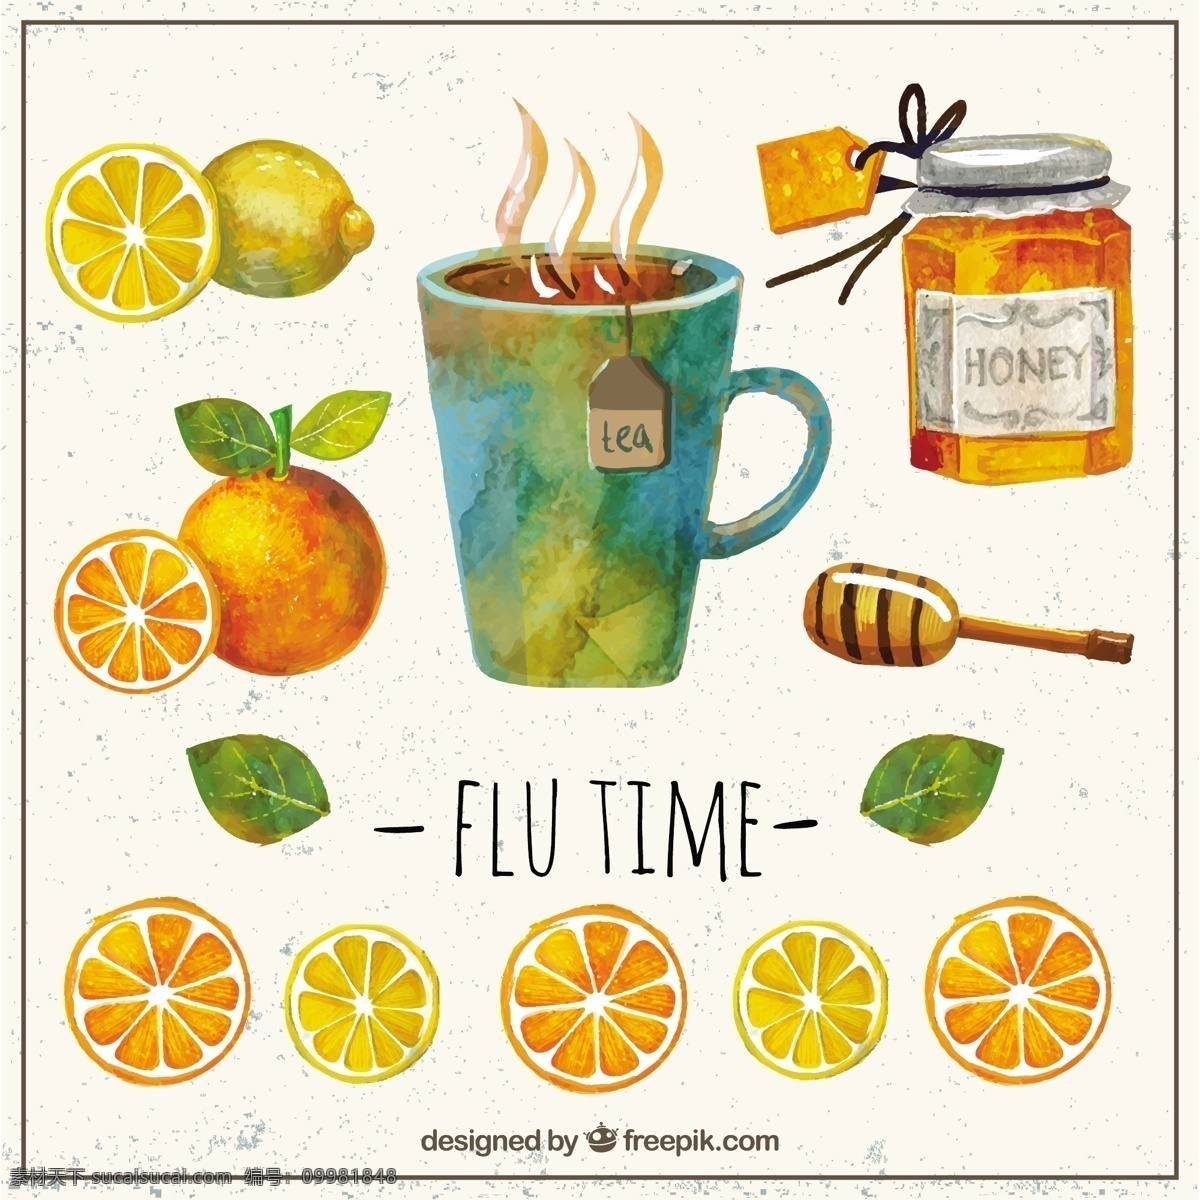 复古水彩画 复古 水彩 手 画 时间 茶 橘子 蜂蜜 杯 柠檬 元素 冷 拉 流感 彩绘 鲜美爽口元素